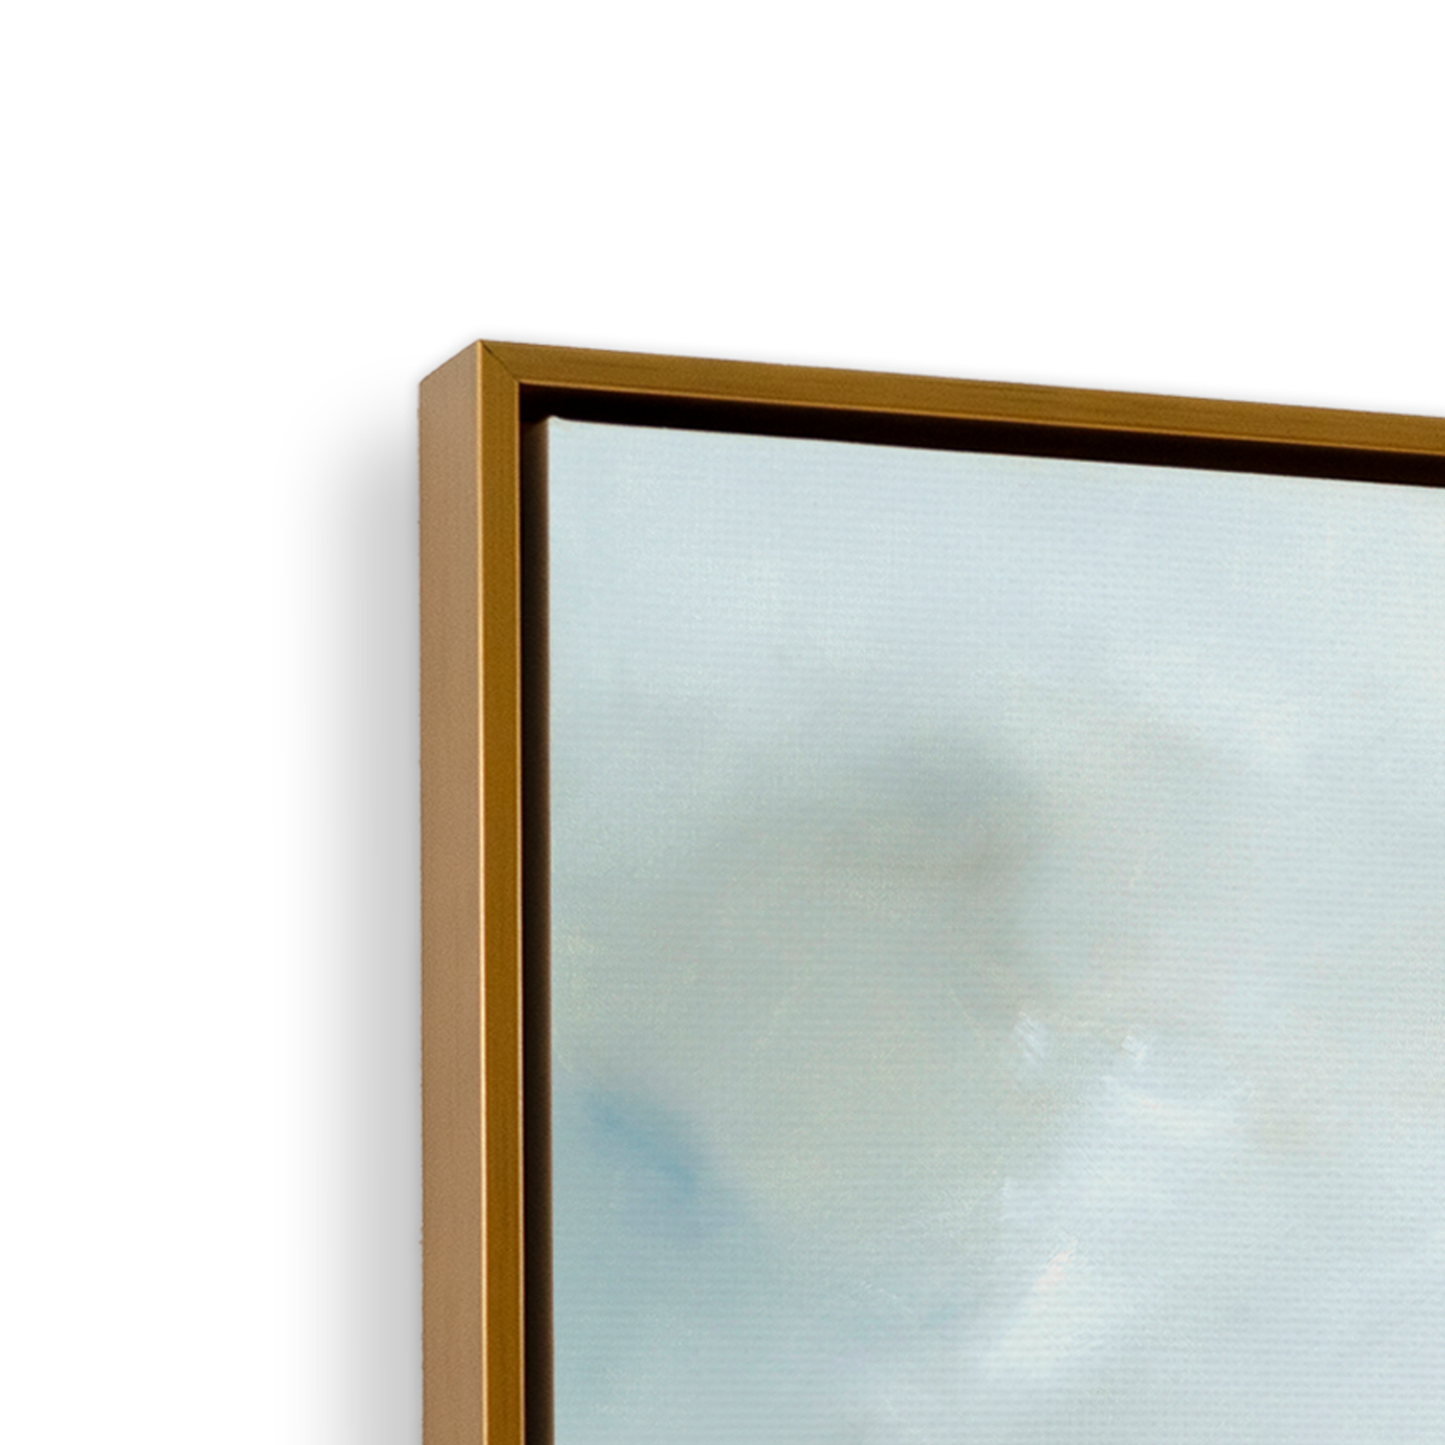 [color:Polished Gold],[shape:square], Frame corner detail